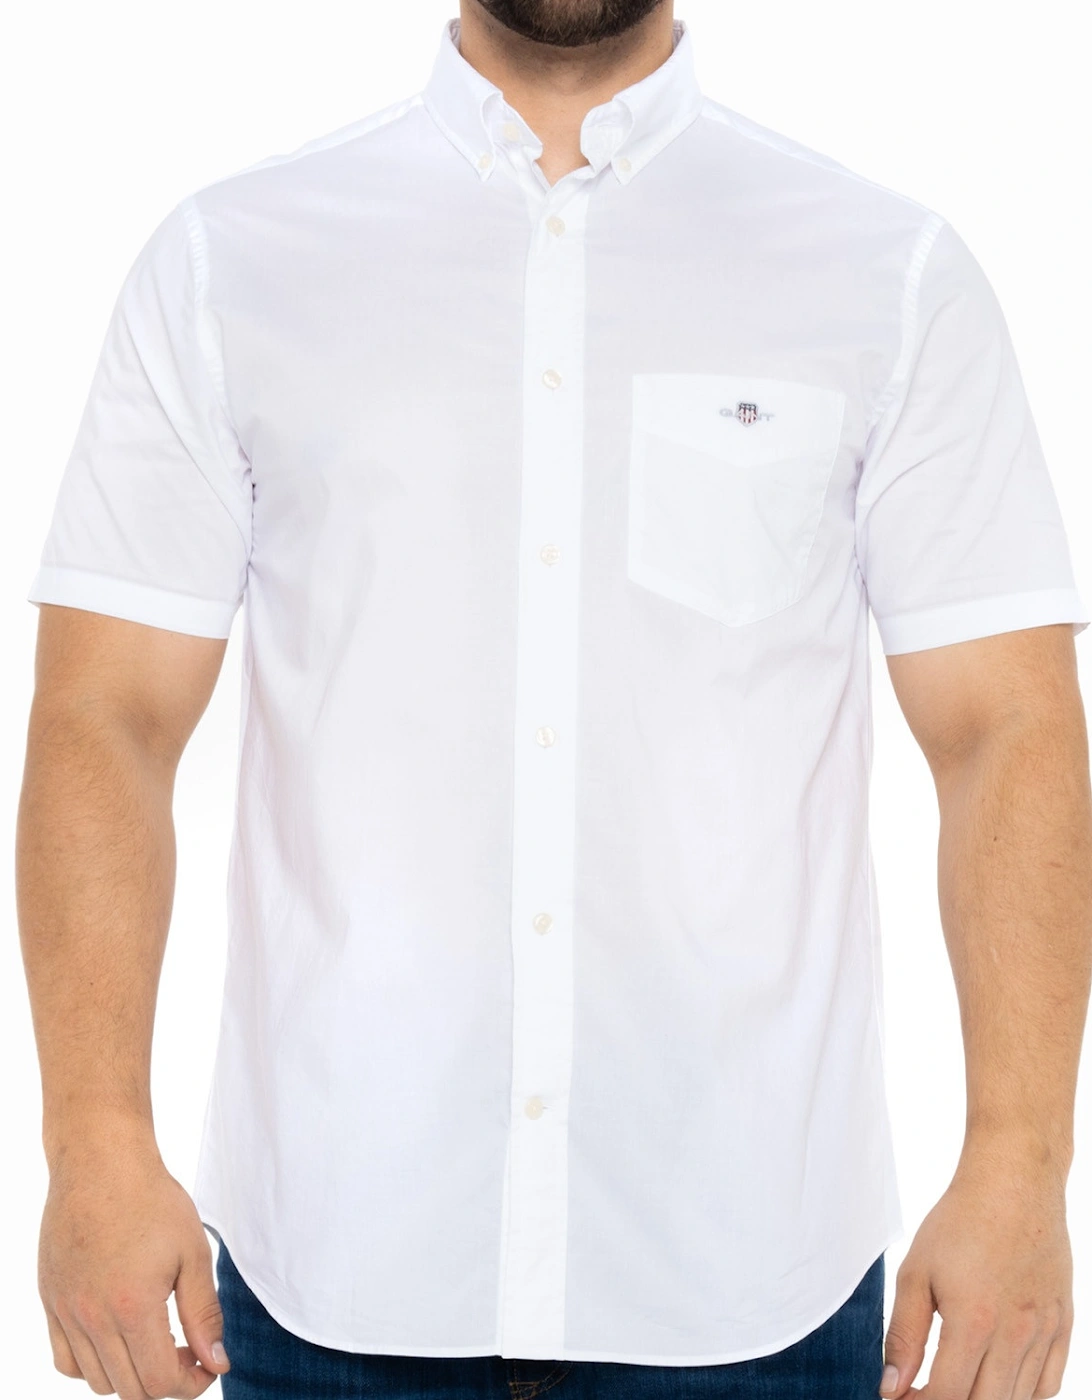 Mens Poplin S/S Shirt (White), 8 of 7